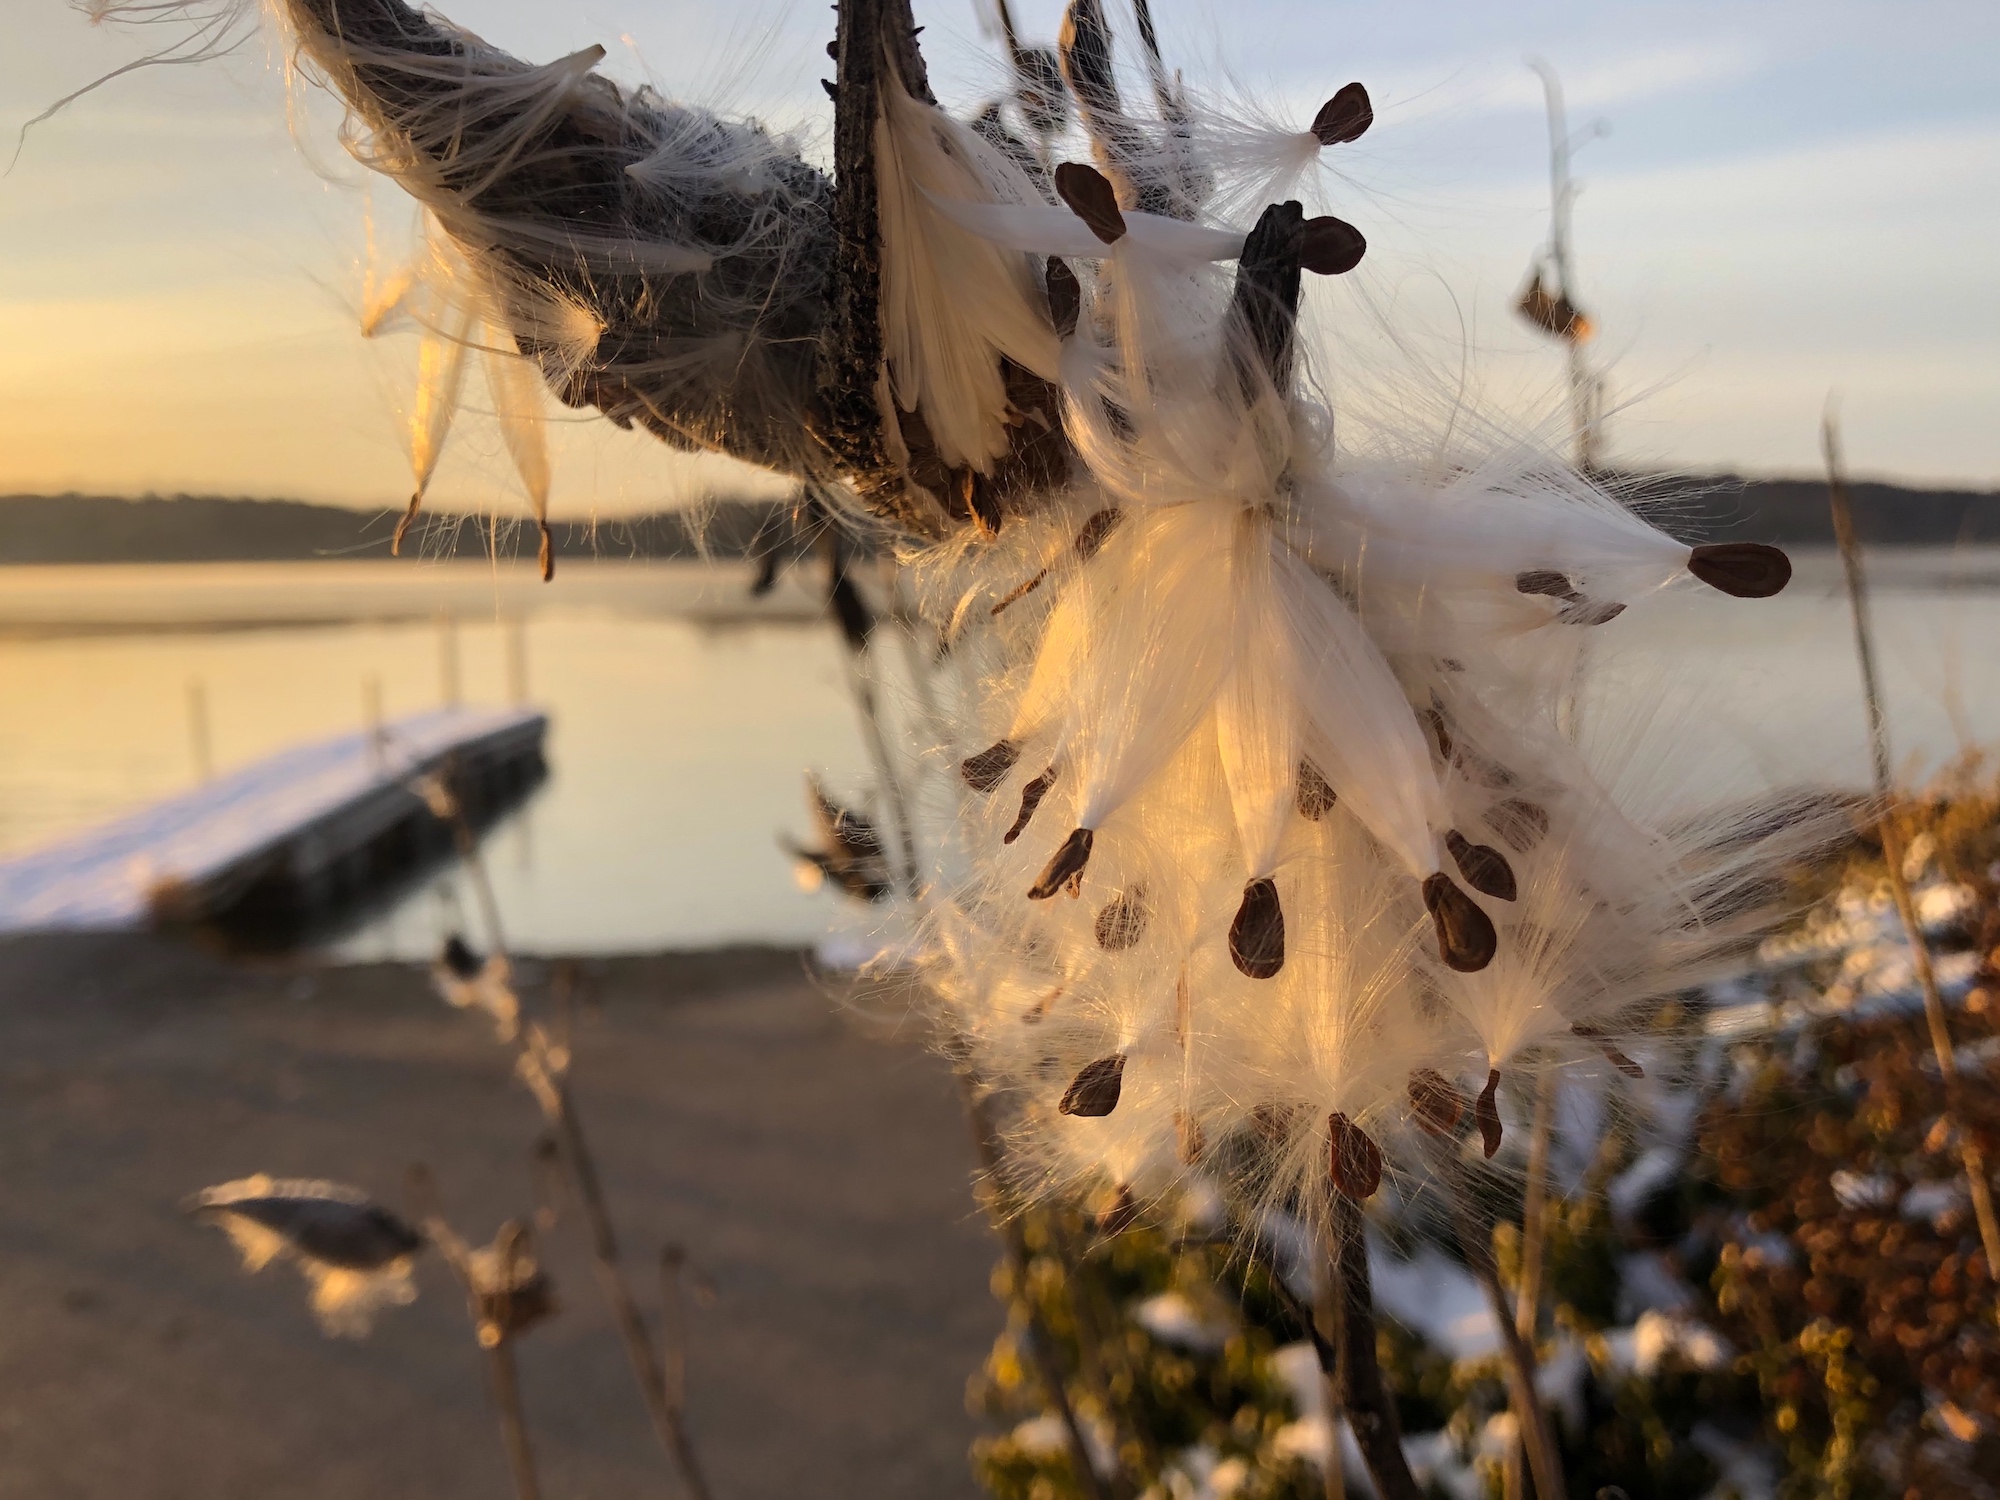 Common Milkweed by Wingra Boats on November 8, 2019.